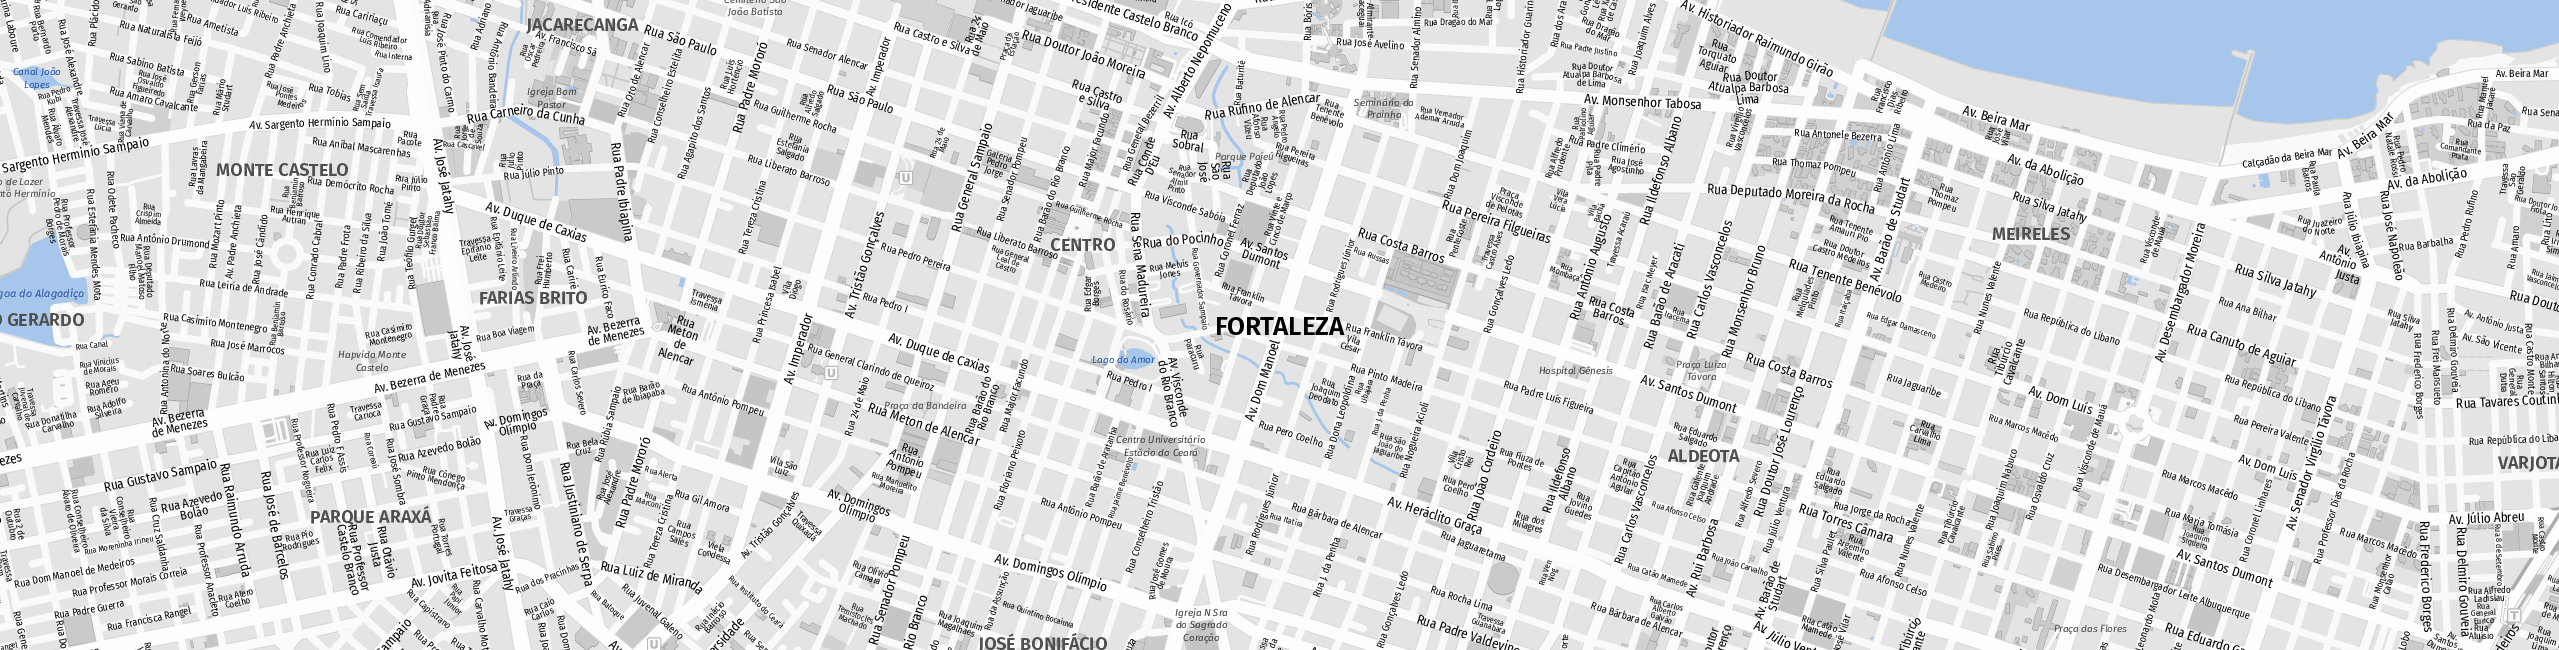 Stadtplan Fortaleza zum Downloaden.